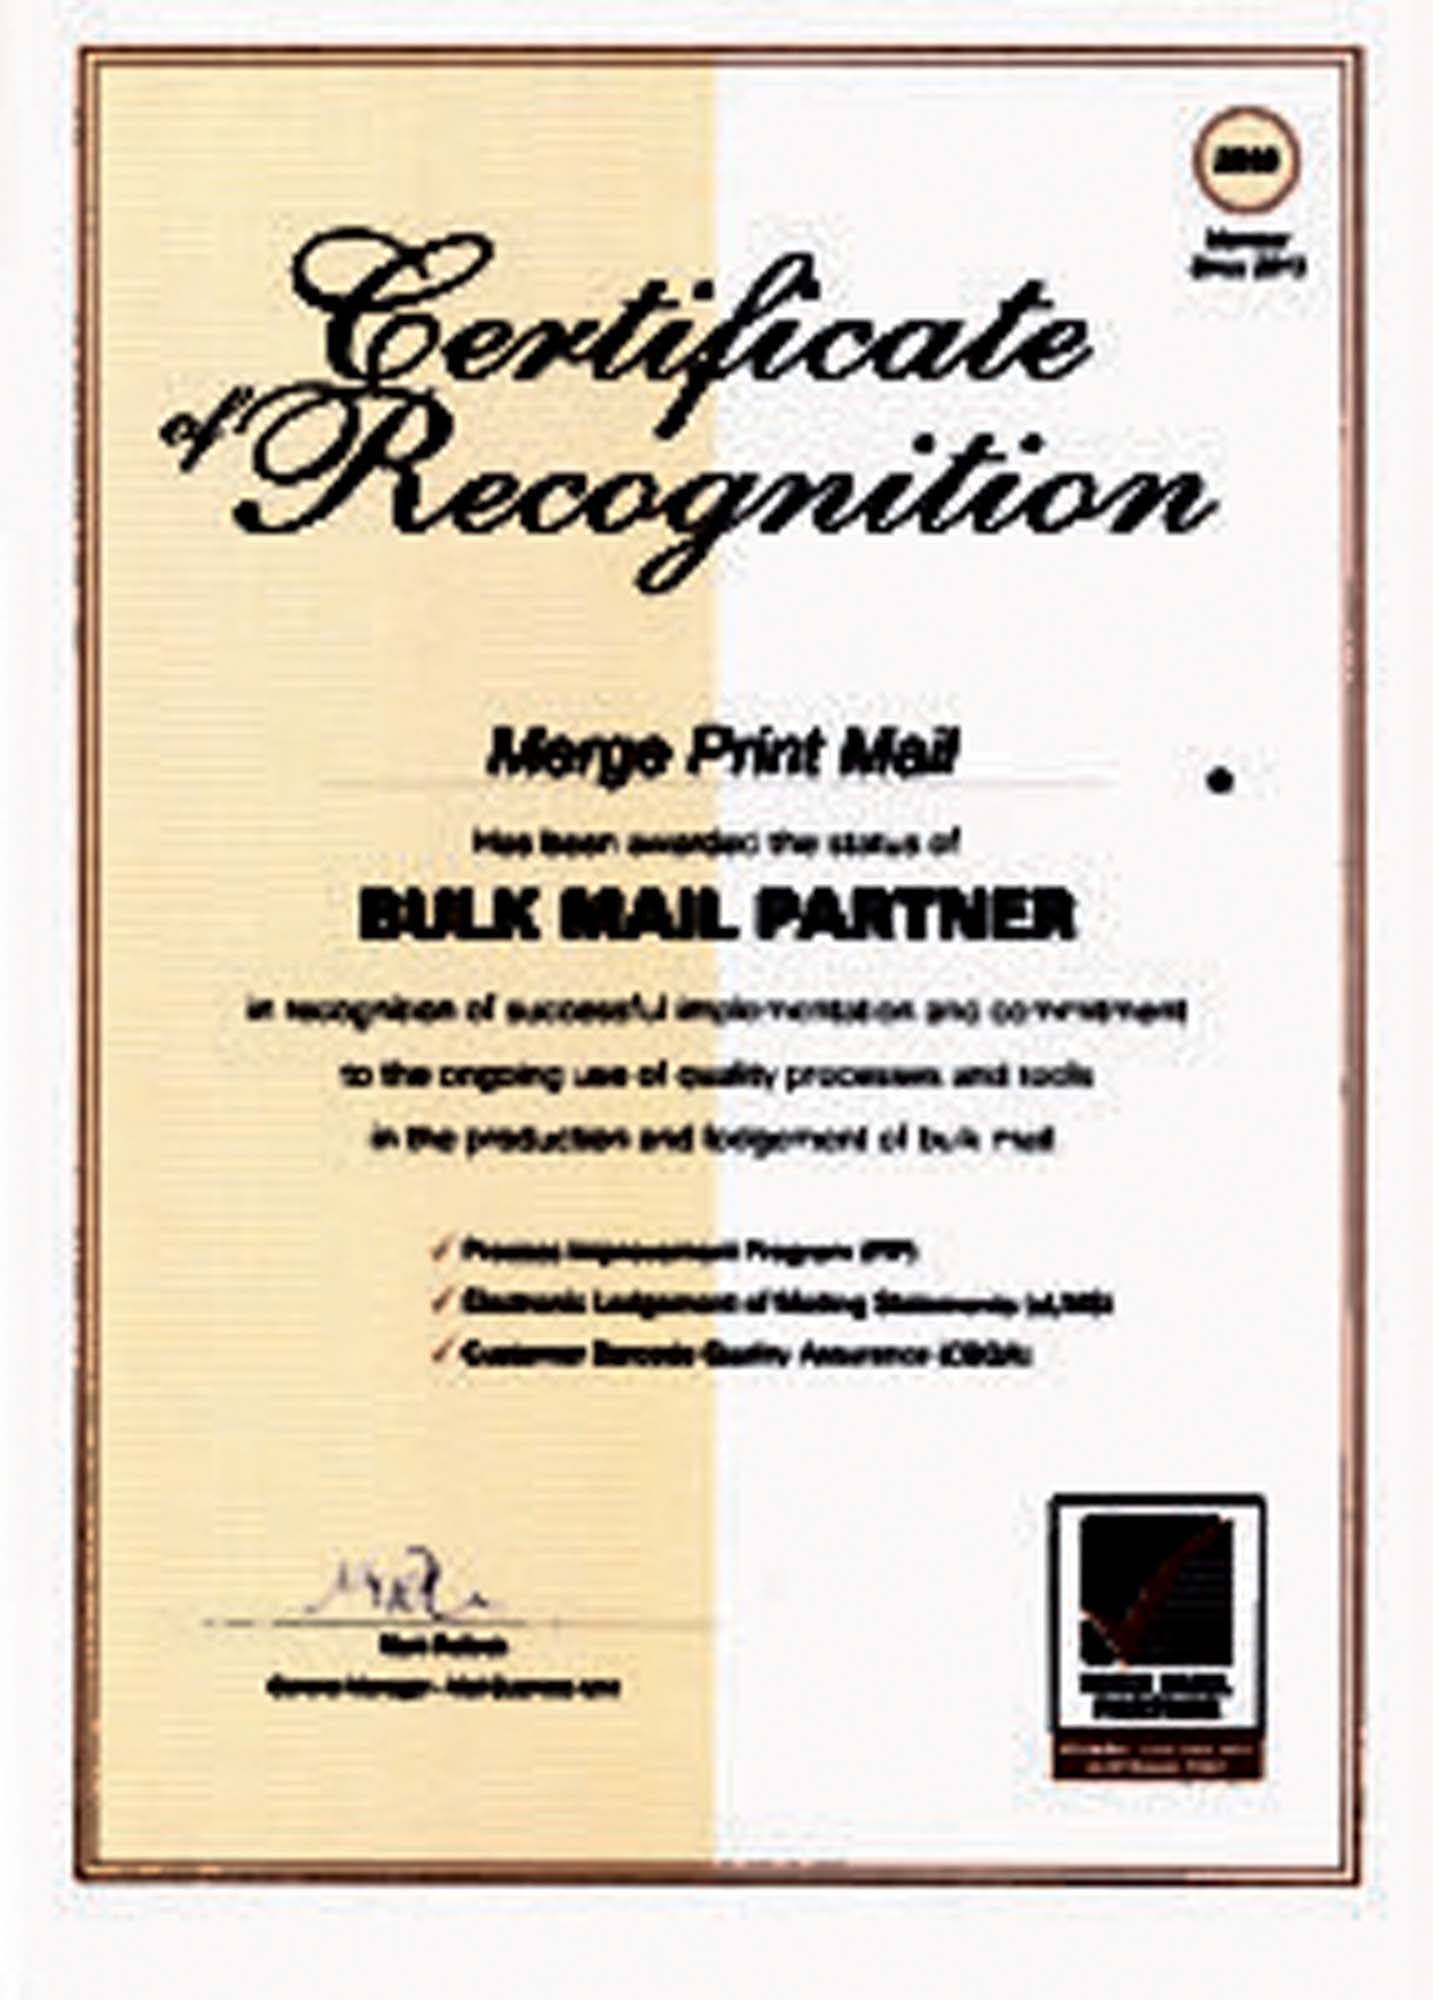 markis bulk mail partner certificate australia post